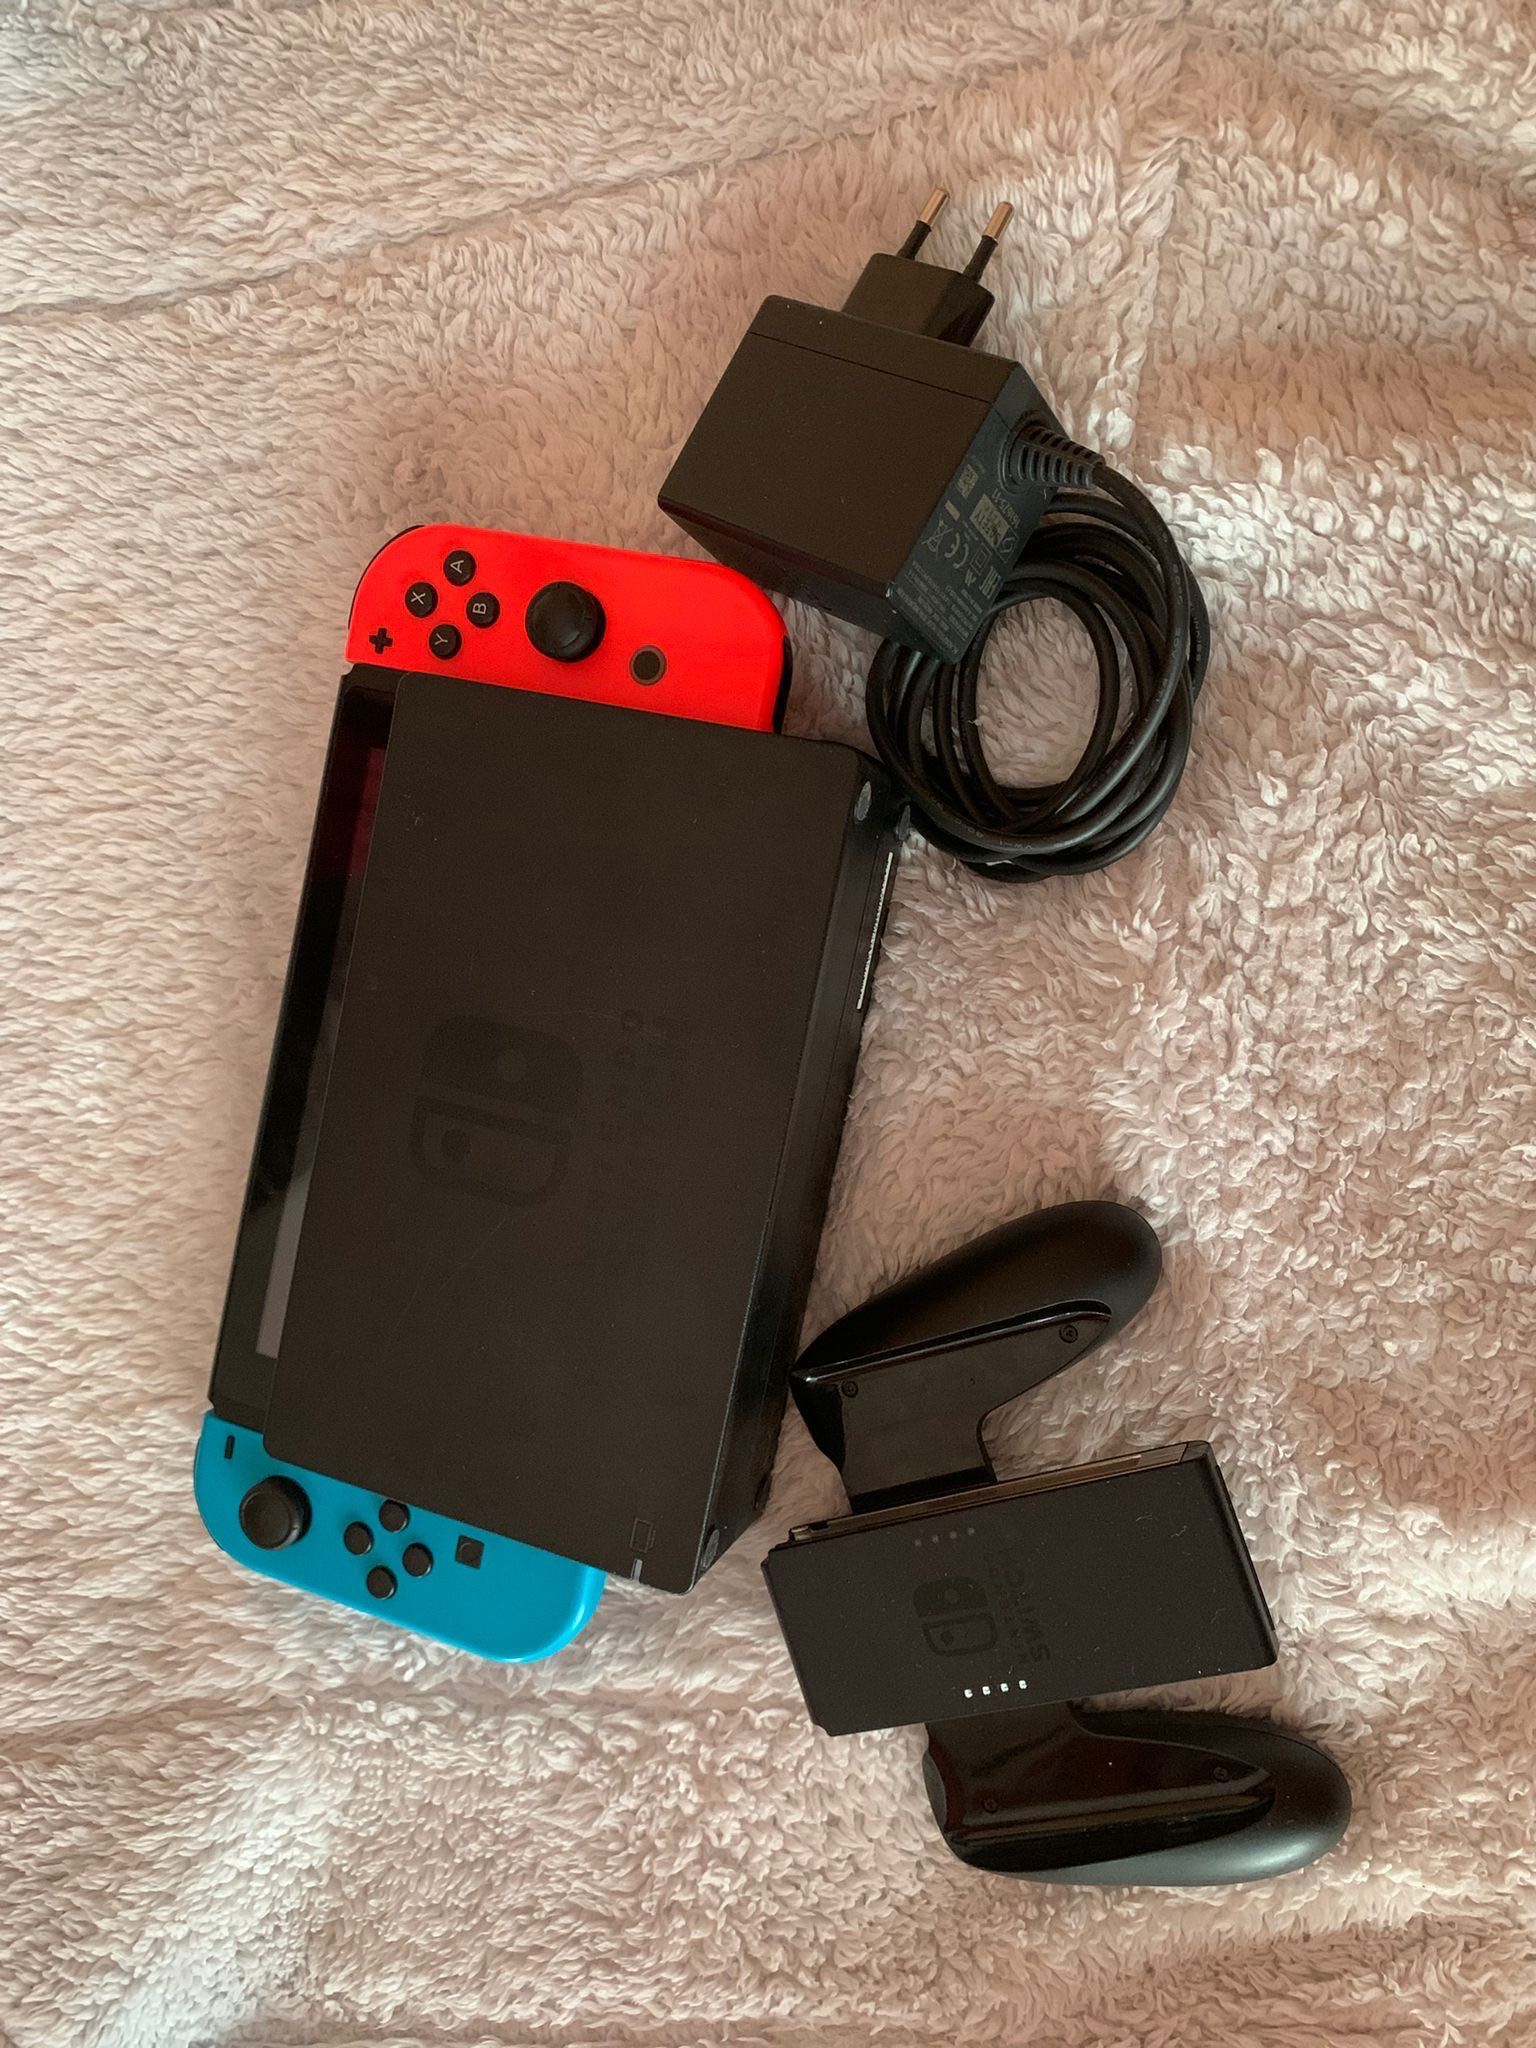 Nintendo Switch vermelho e azul